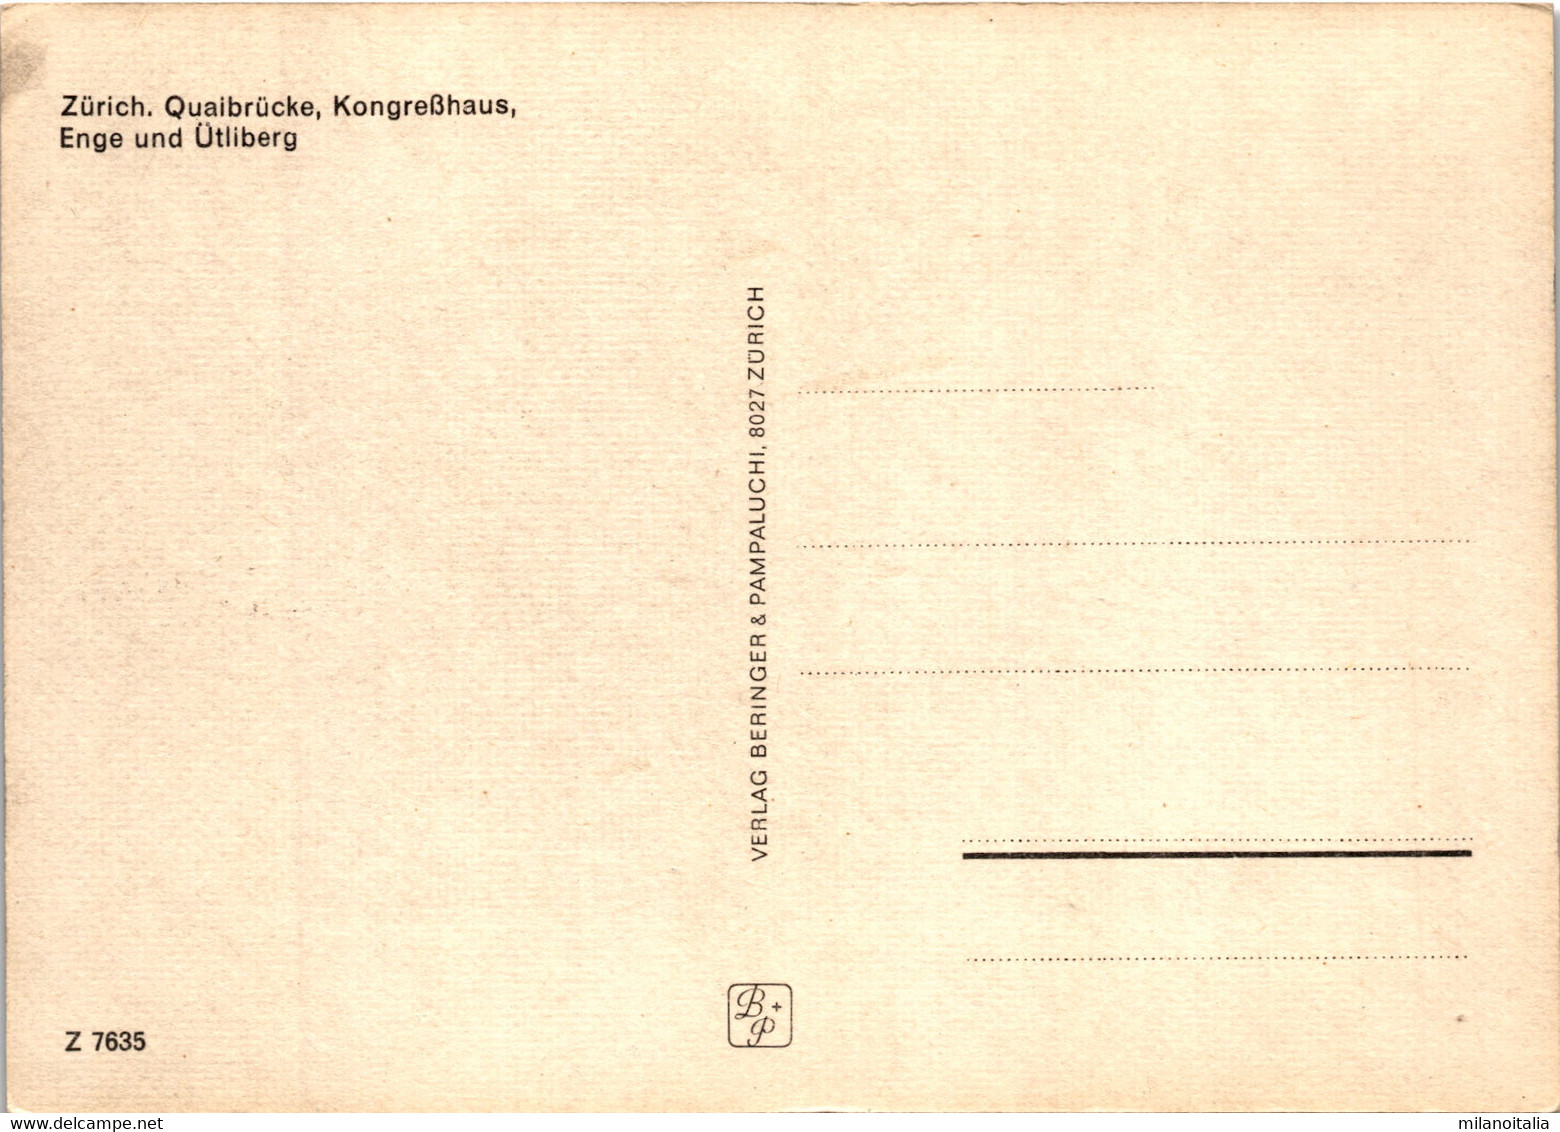 Zürich - Quaibrücke, Kongreßhaus, Enge Und Ütliberg (7635) - Enge